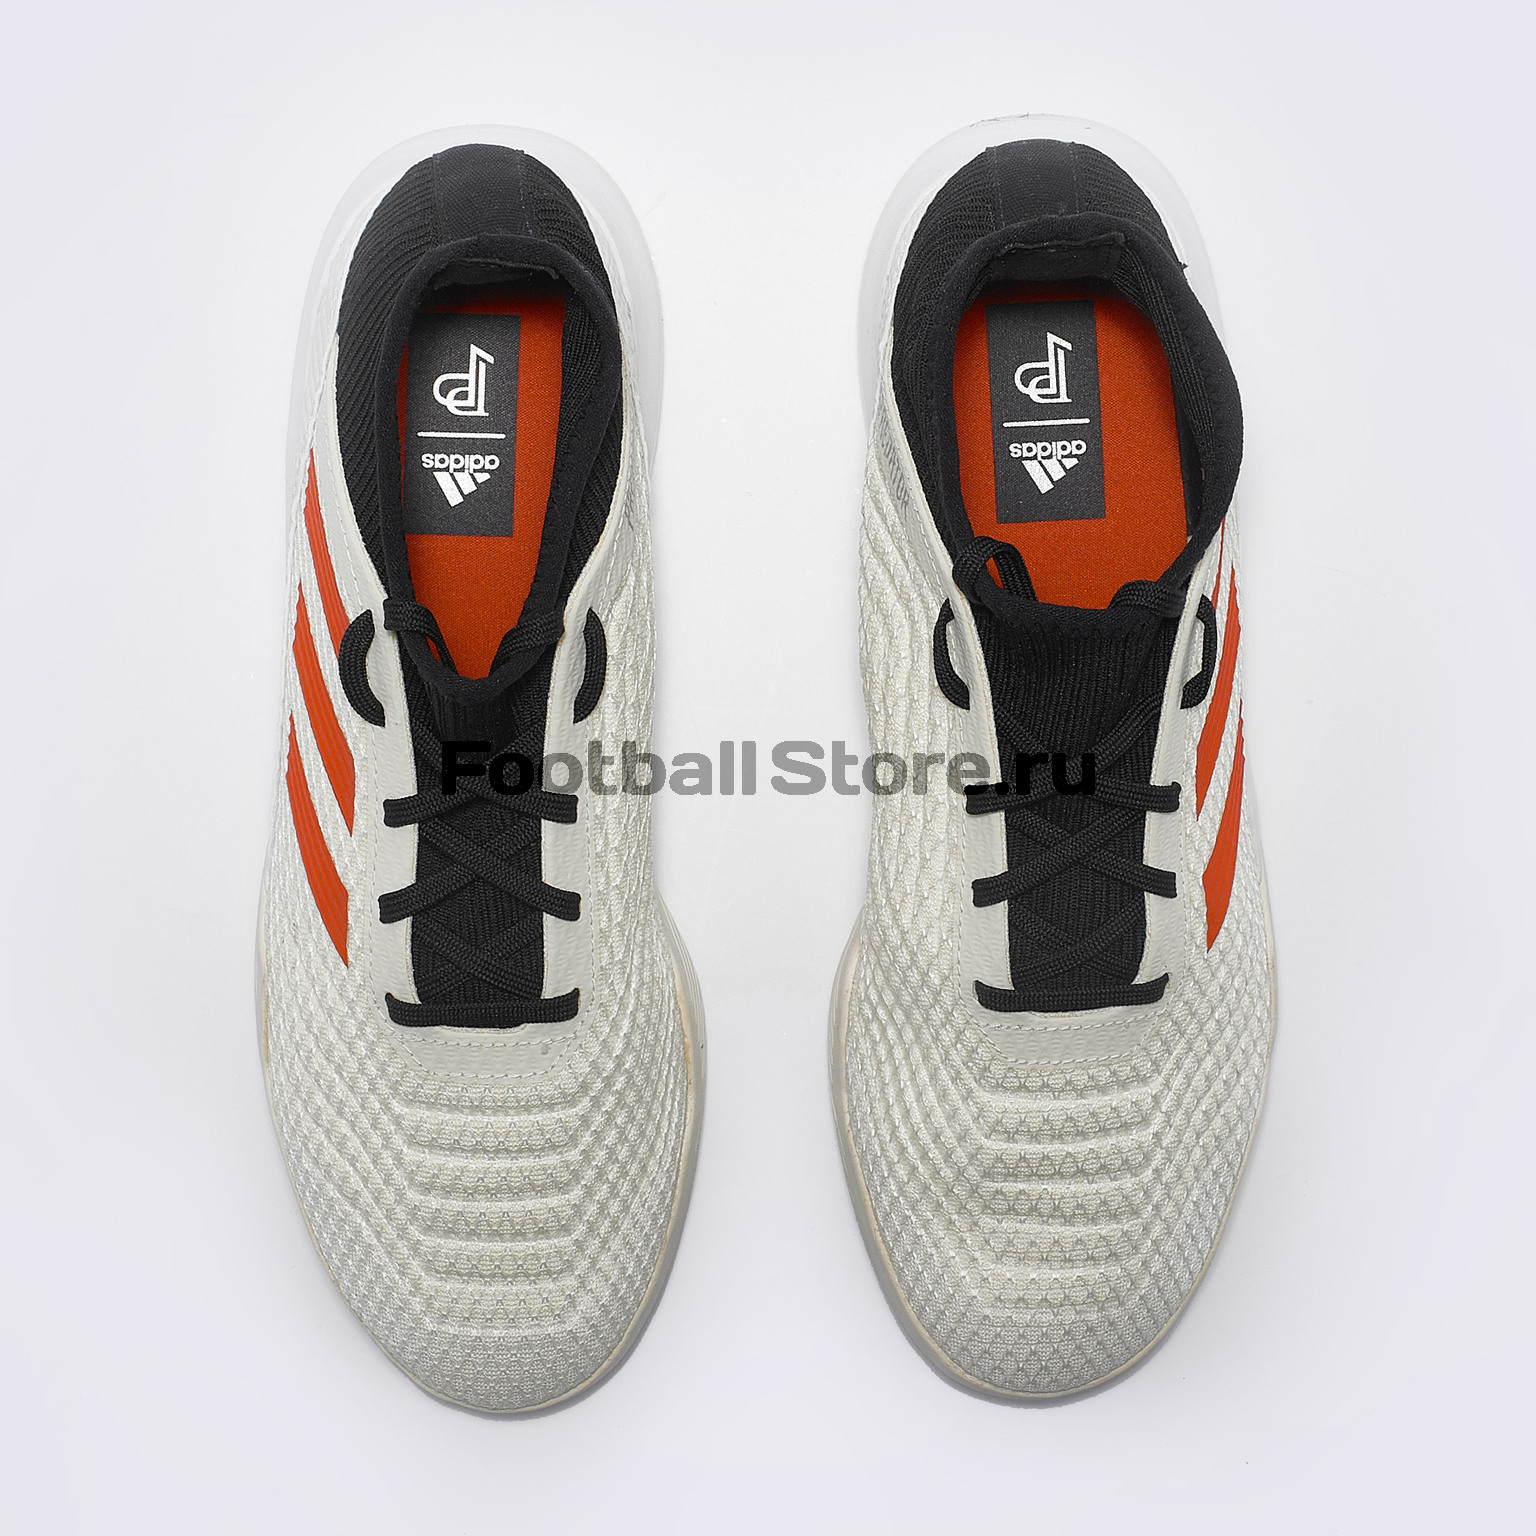 Футбольная обувь Adidas Predator Pogba 19.3 TR G26317